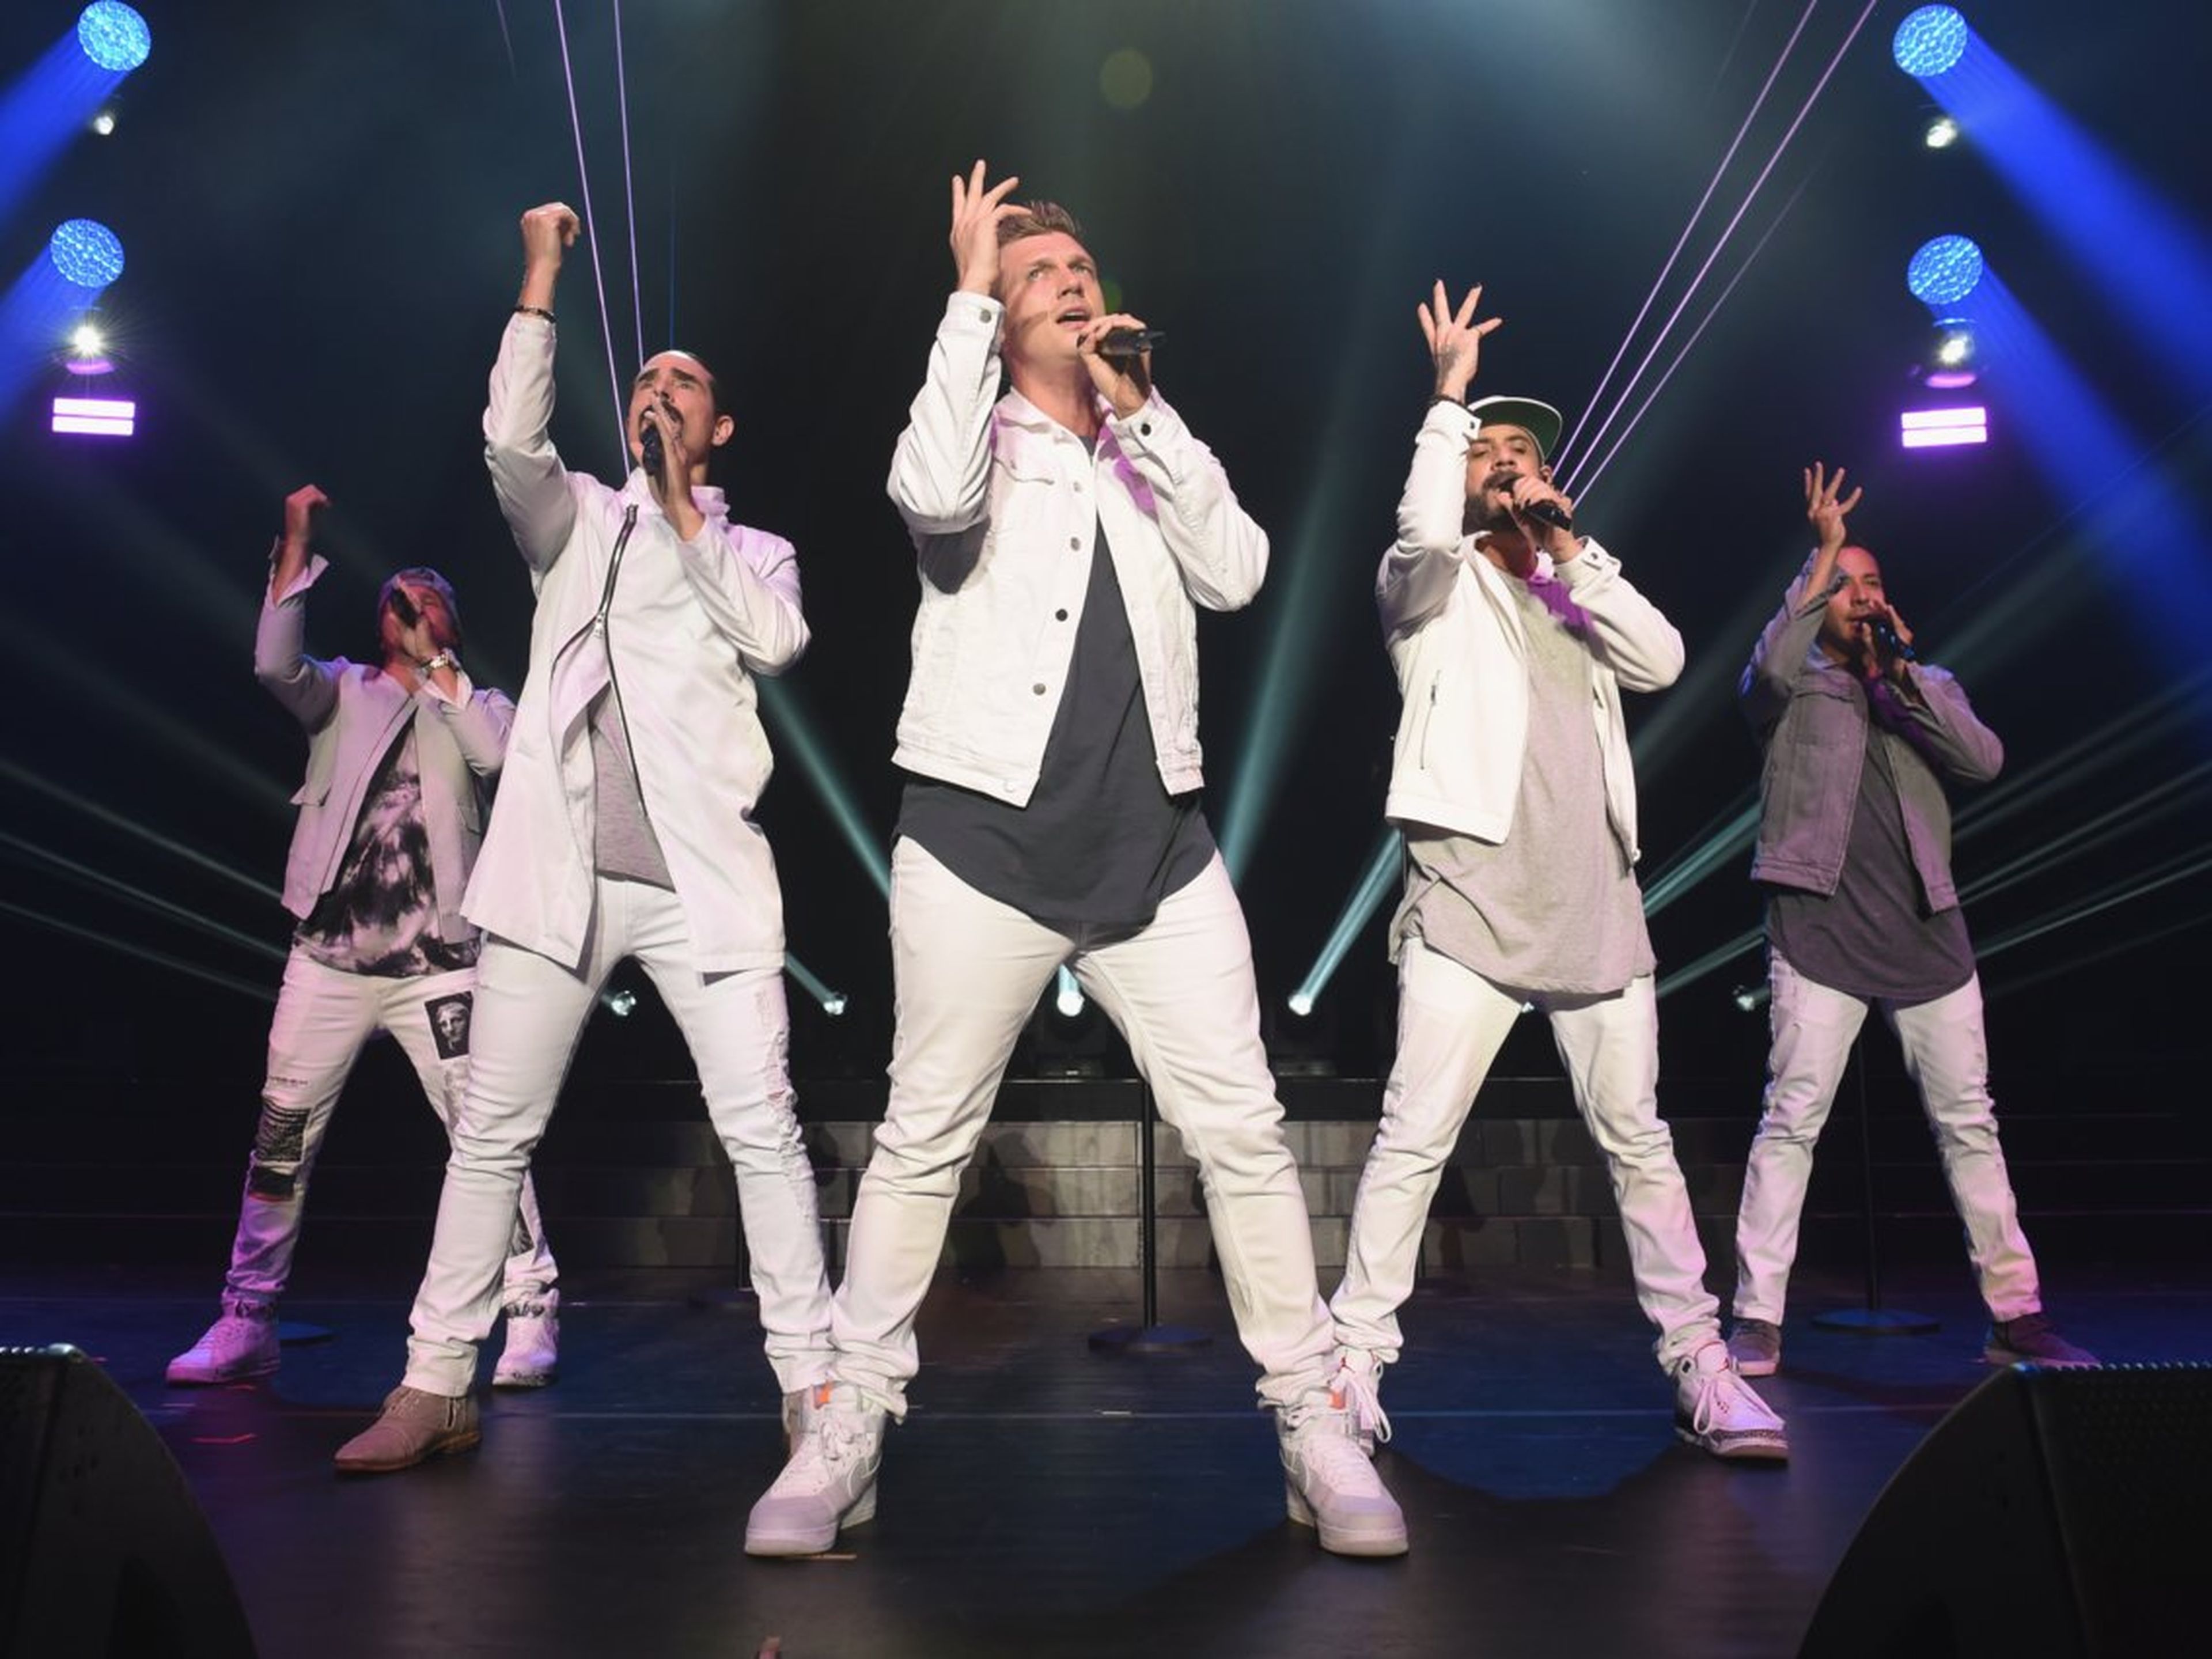 Desde la izquierda, Kevin Richardson, Howie Dorough, Nick Carter, Brian Littrell y AJ McLean de los Backstreet Boys actuando el 16 de junio de 2018.